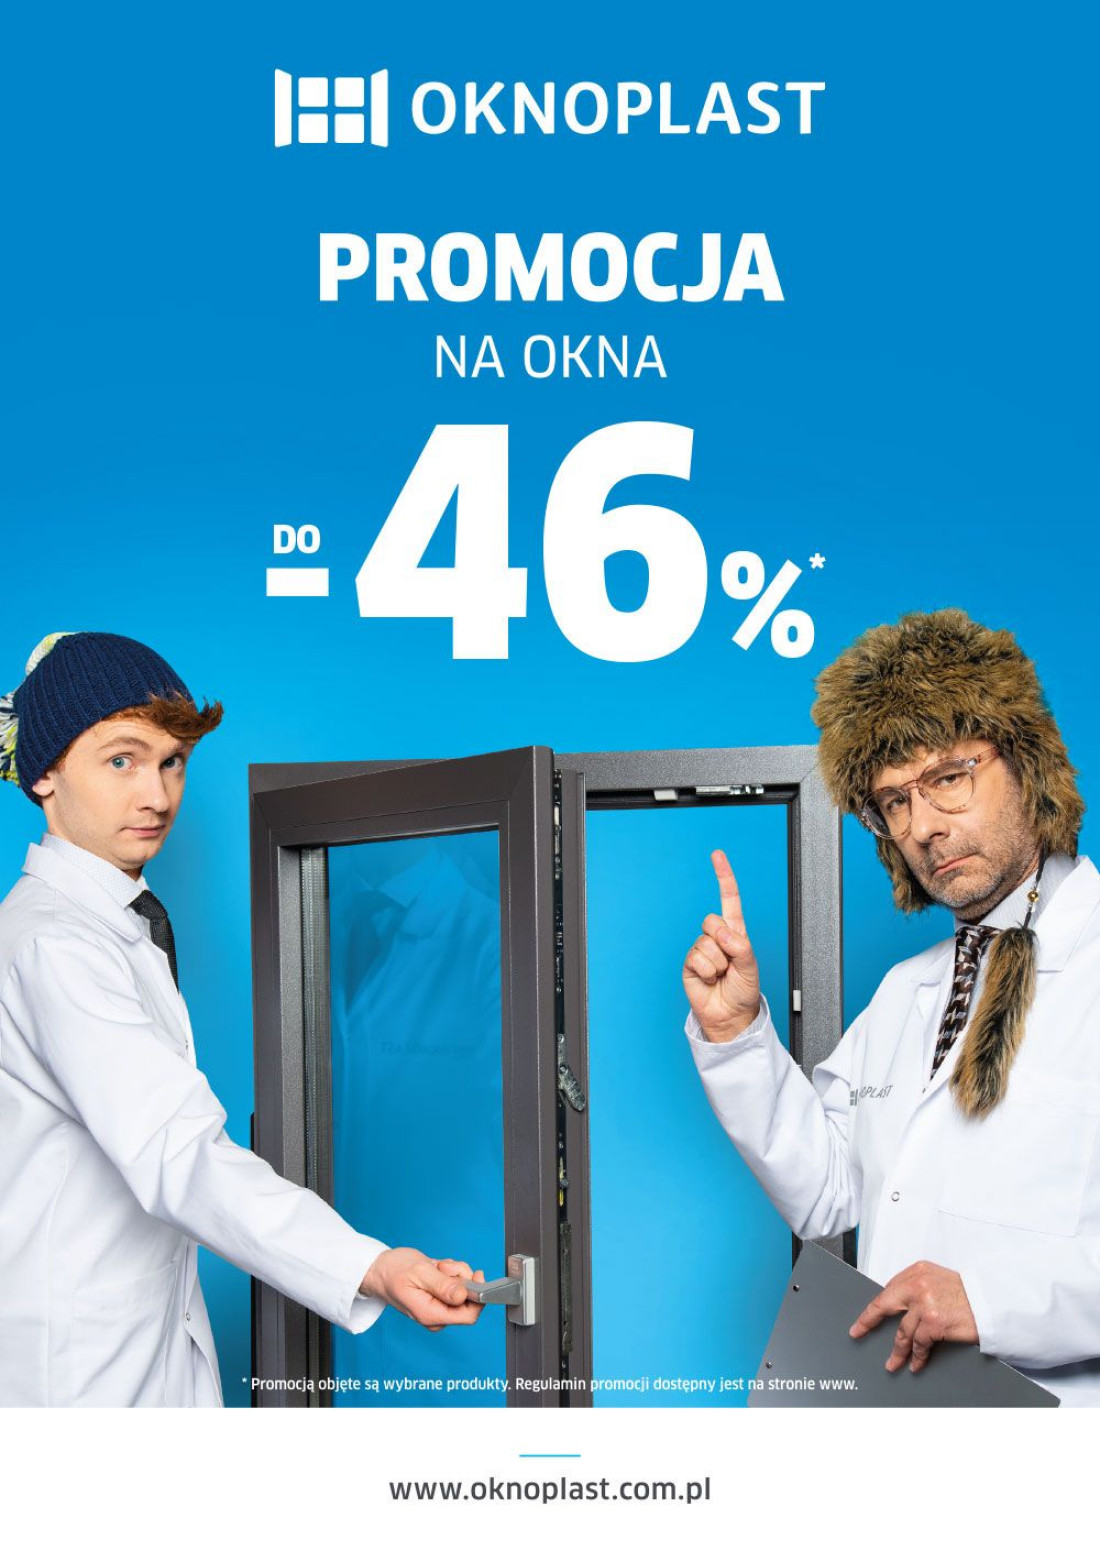 OKNOPLAST uruchamia promocję zimową - wybrane okna można kupić aż do 46% taniej!